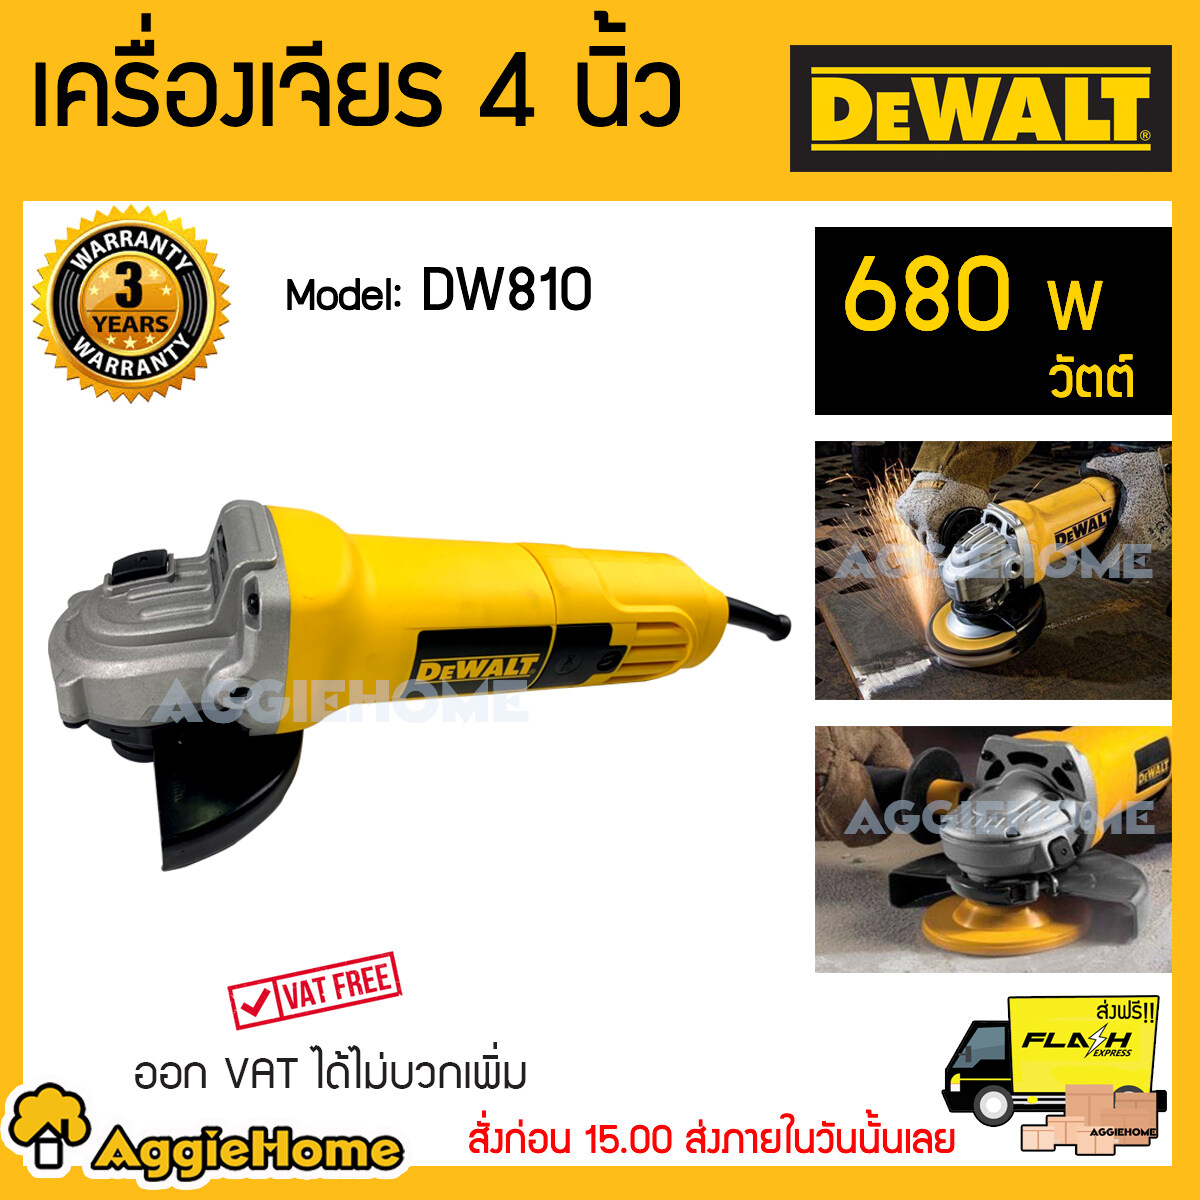 DEWALT เครื่องเจียร์4นิ้ว รุ่น DW810